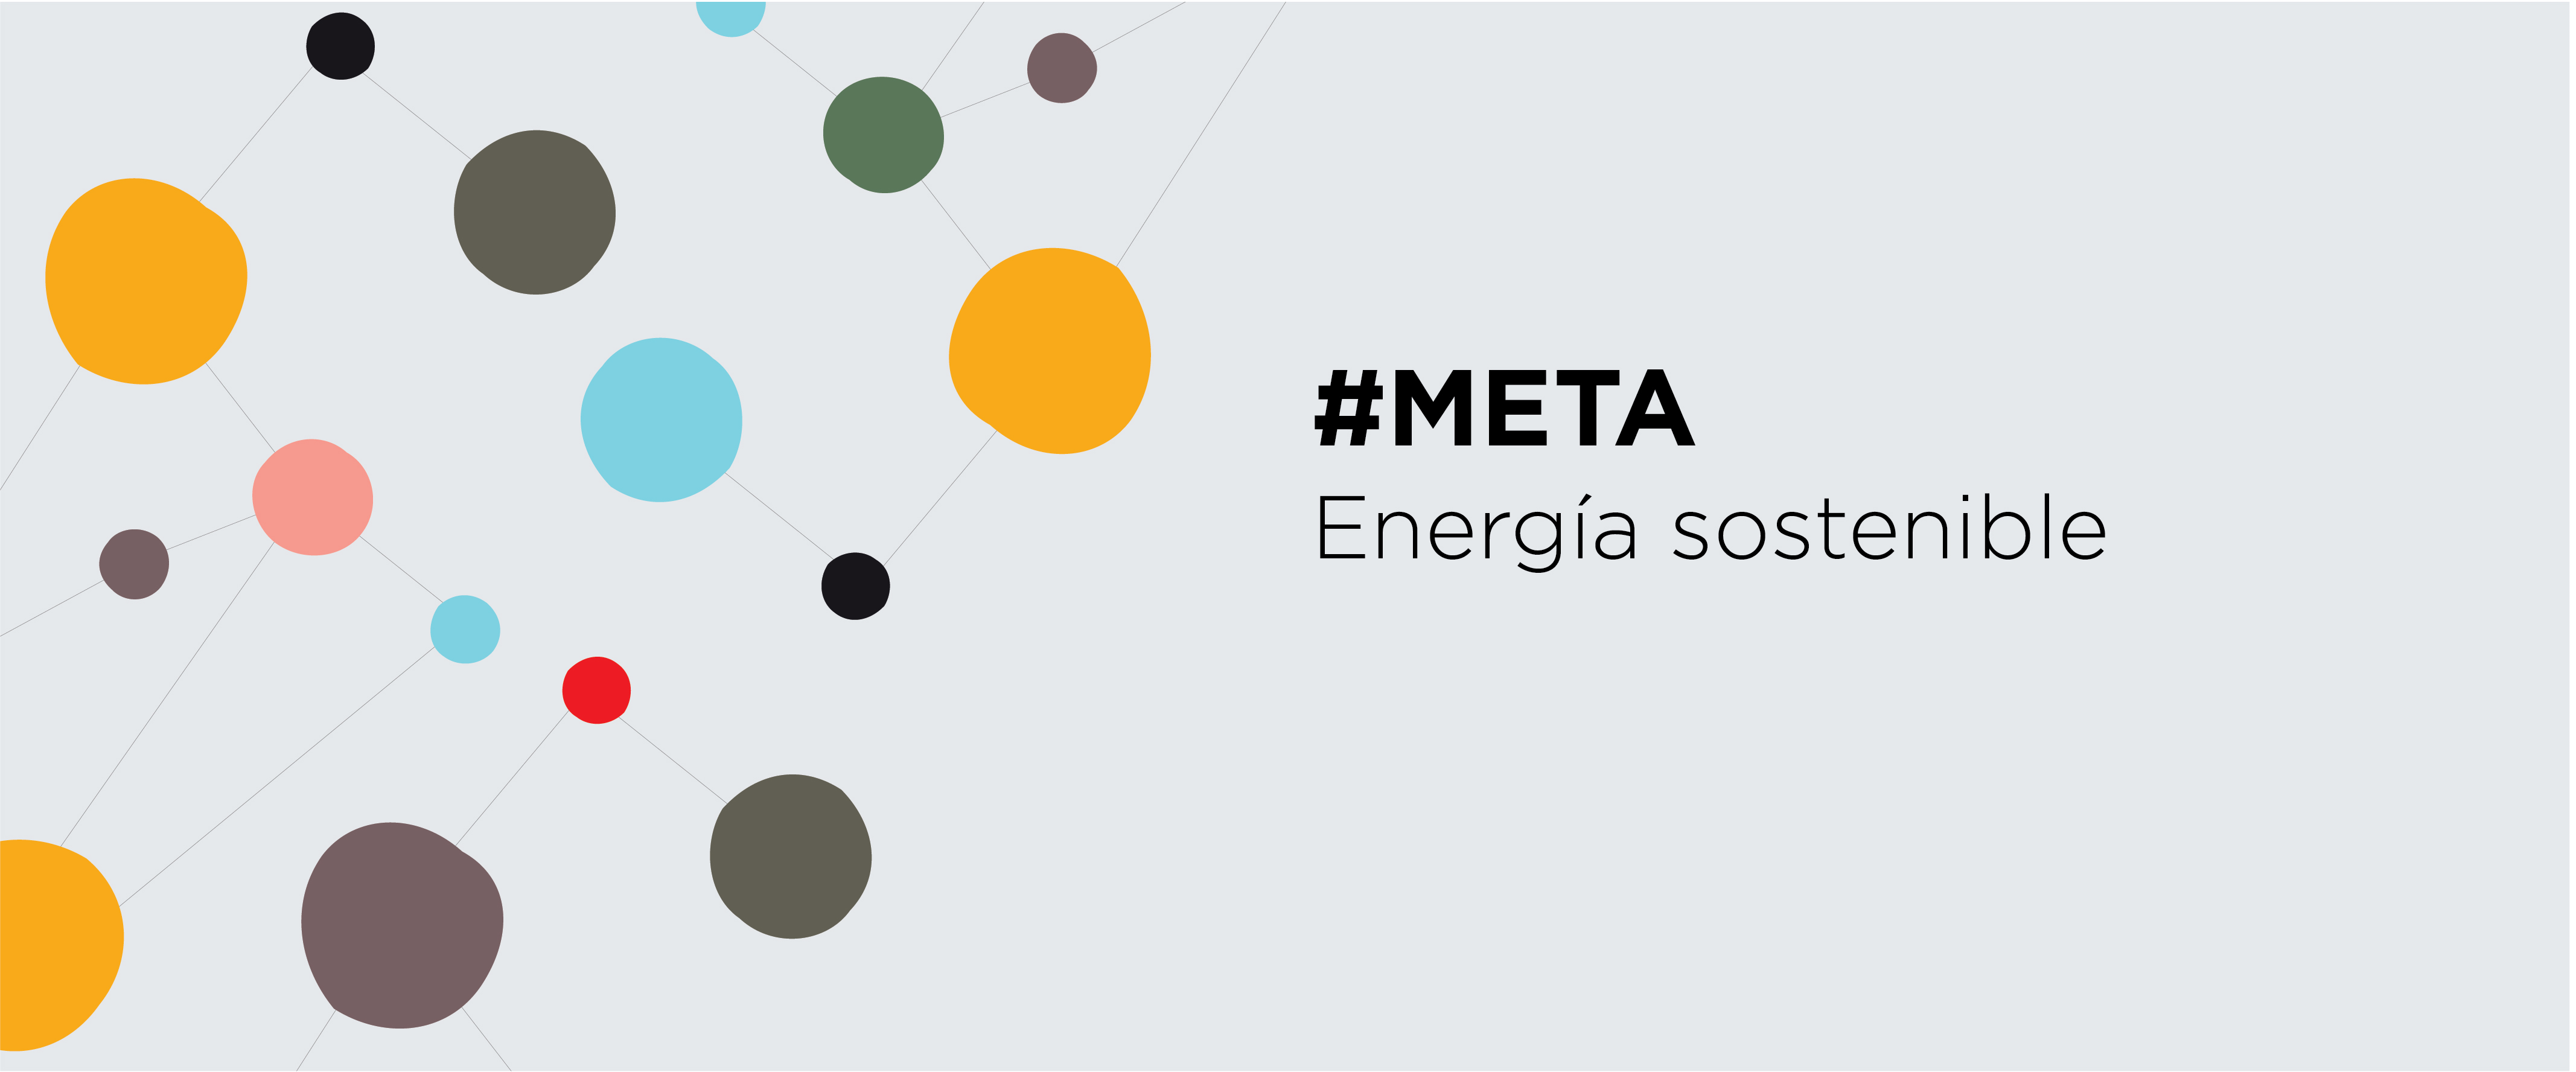 Flyer "Meta: energía sostenible" - CIPPEC